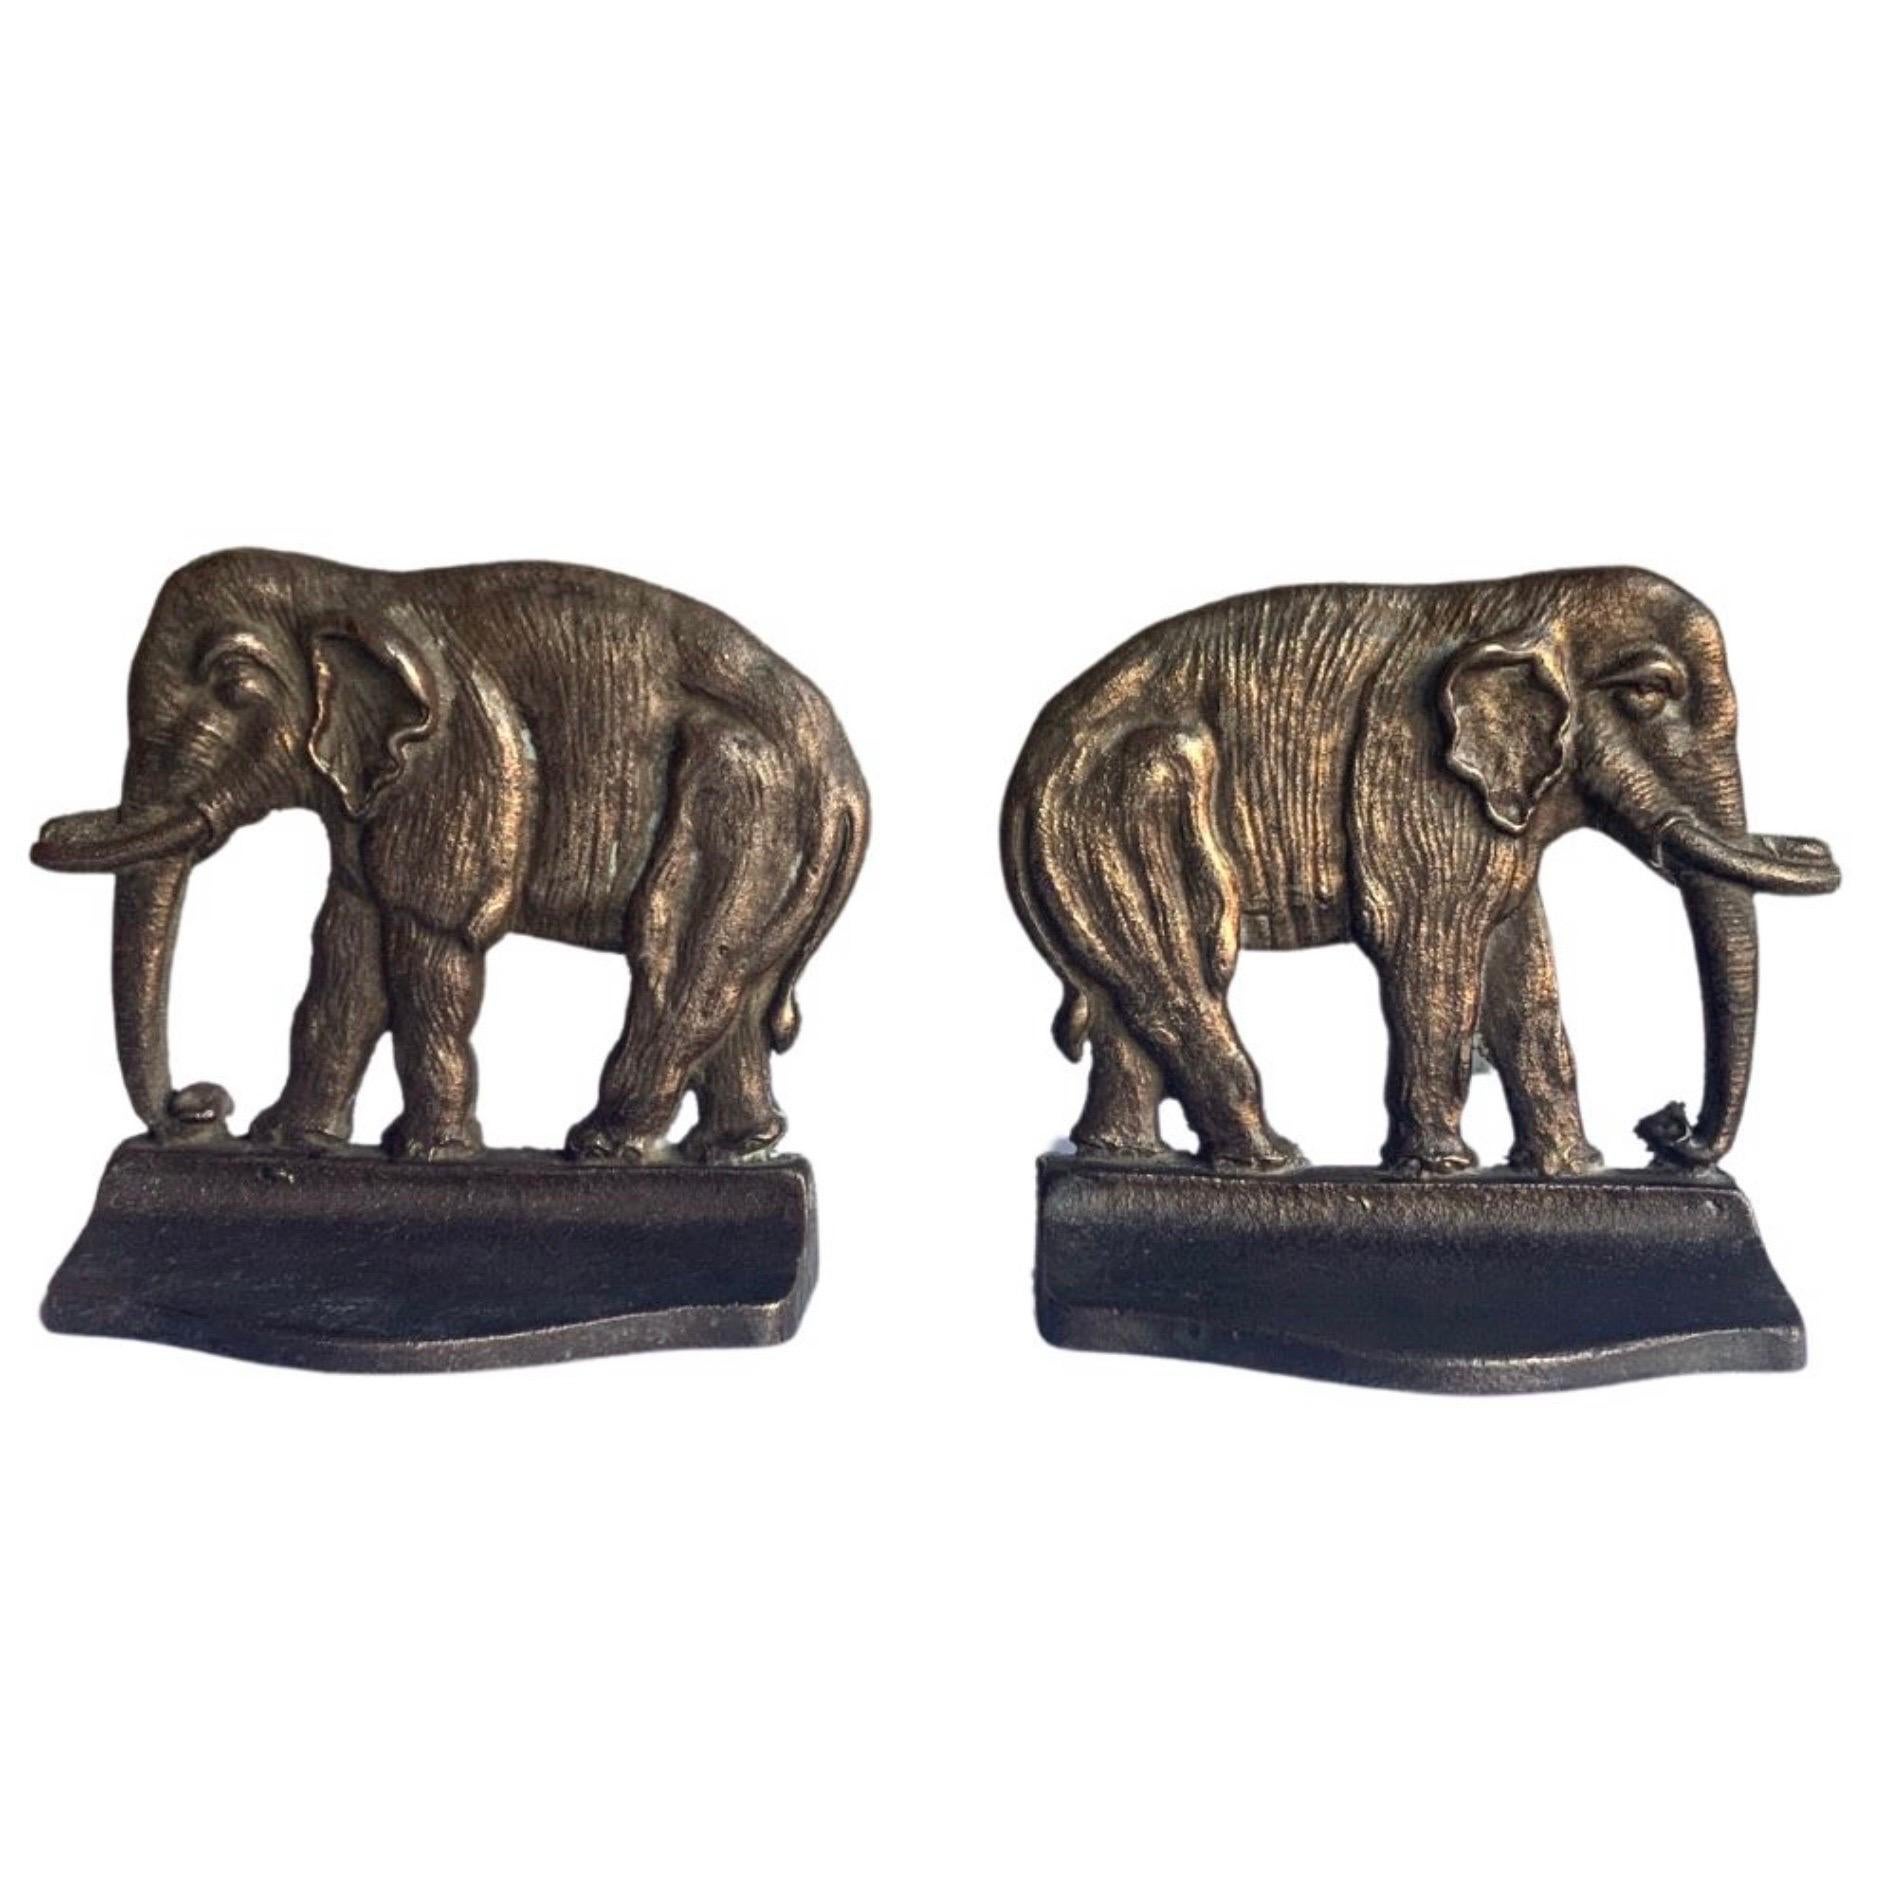 Serre-livres éléphant en bronze des années 1920 

Bronze lourd 

Belle patine